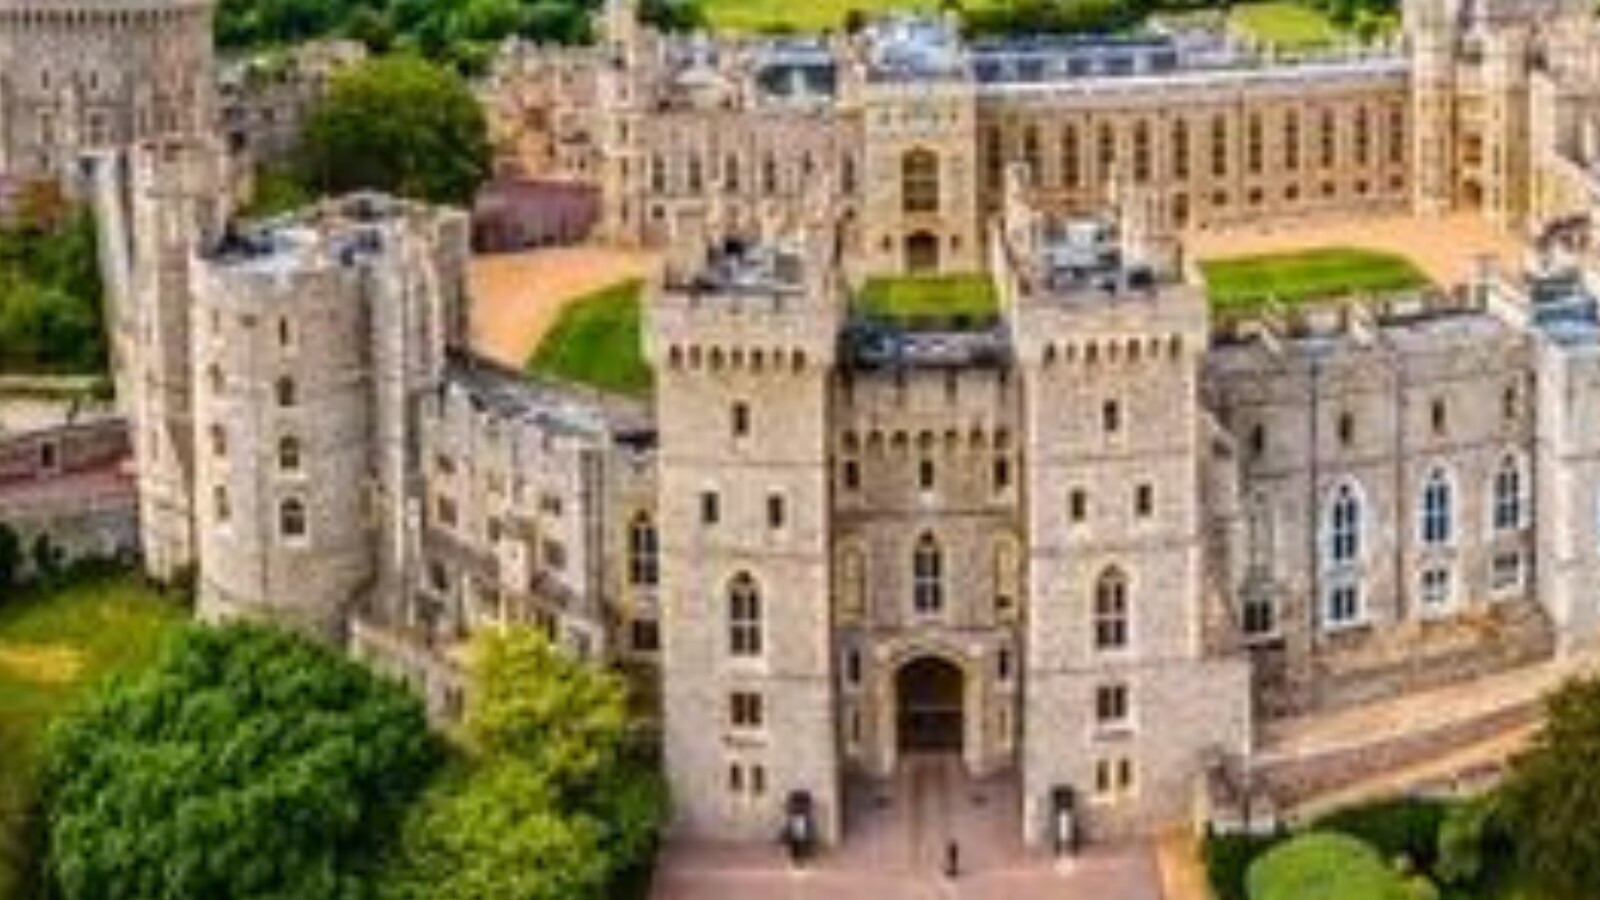 Windsor Castle Reopens For Visitors After Queen Elizabeth’s Death